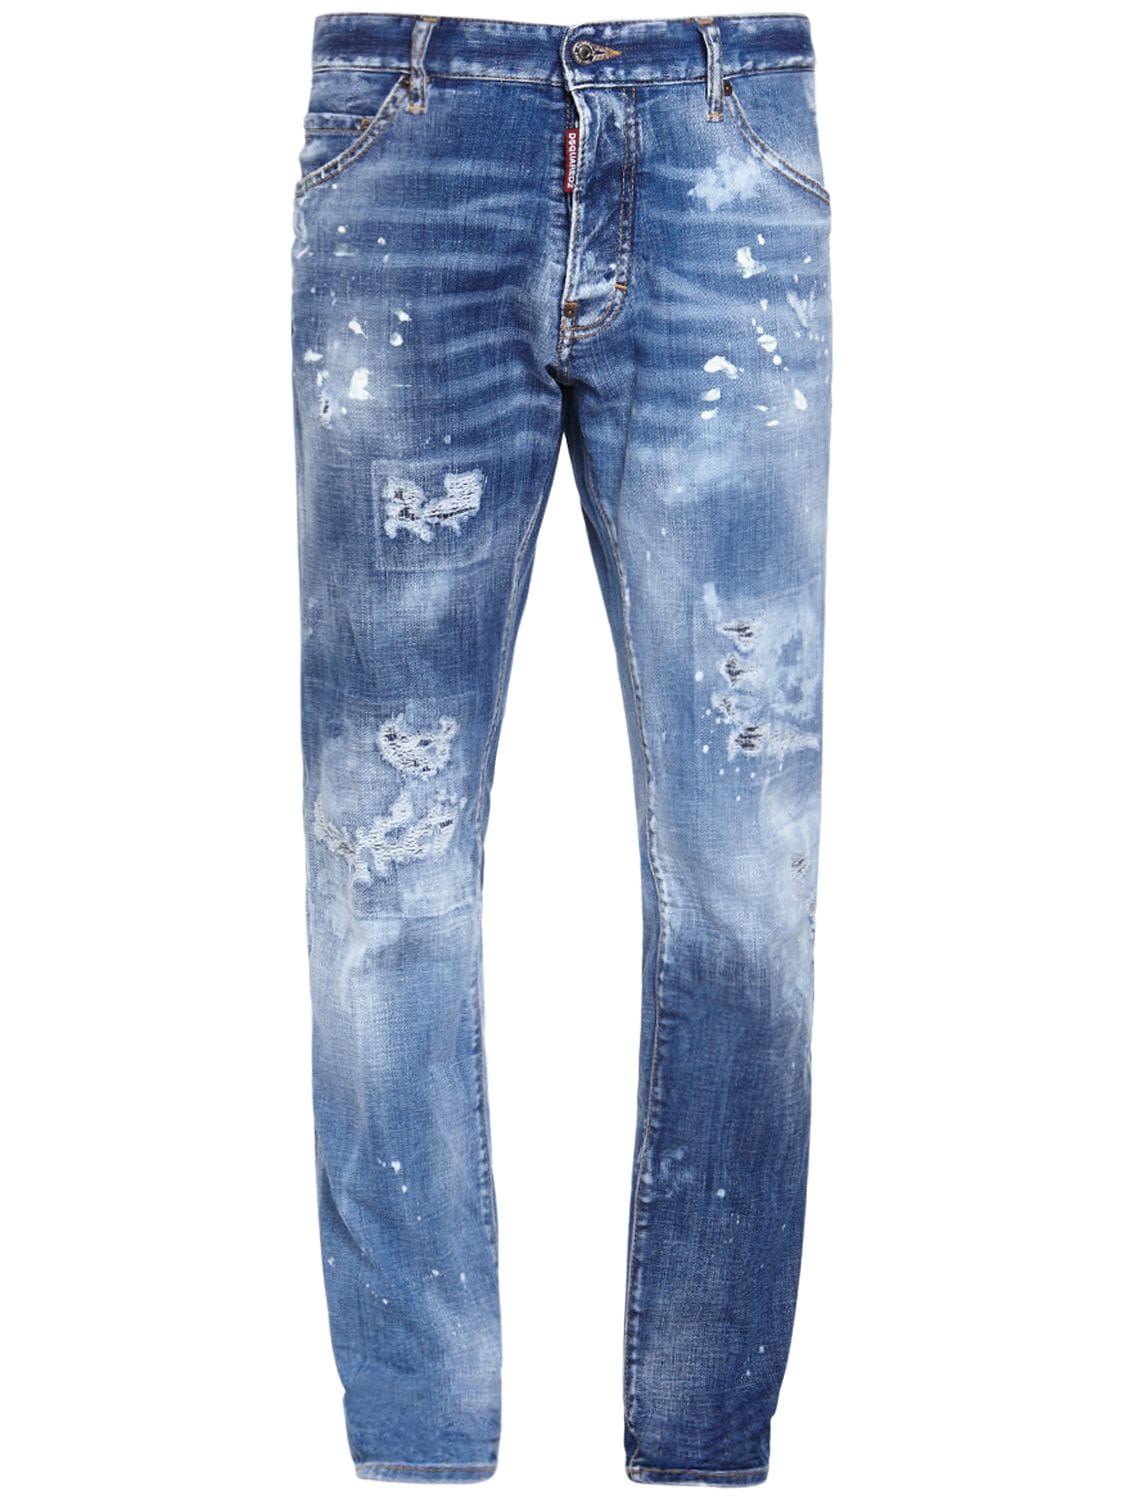 18cm Cool Guy Cotton Denim Jeans